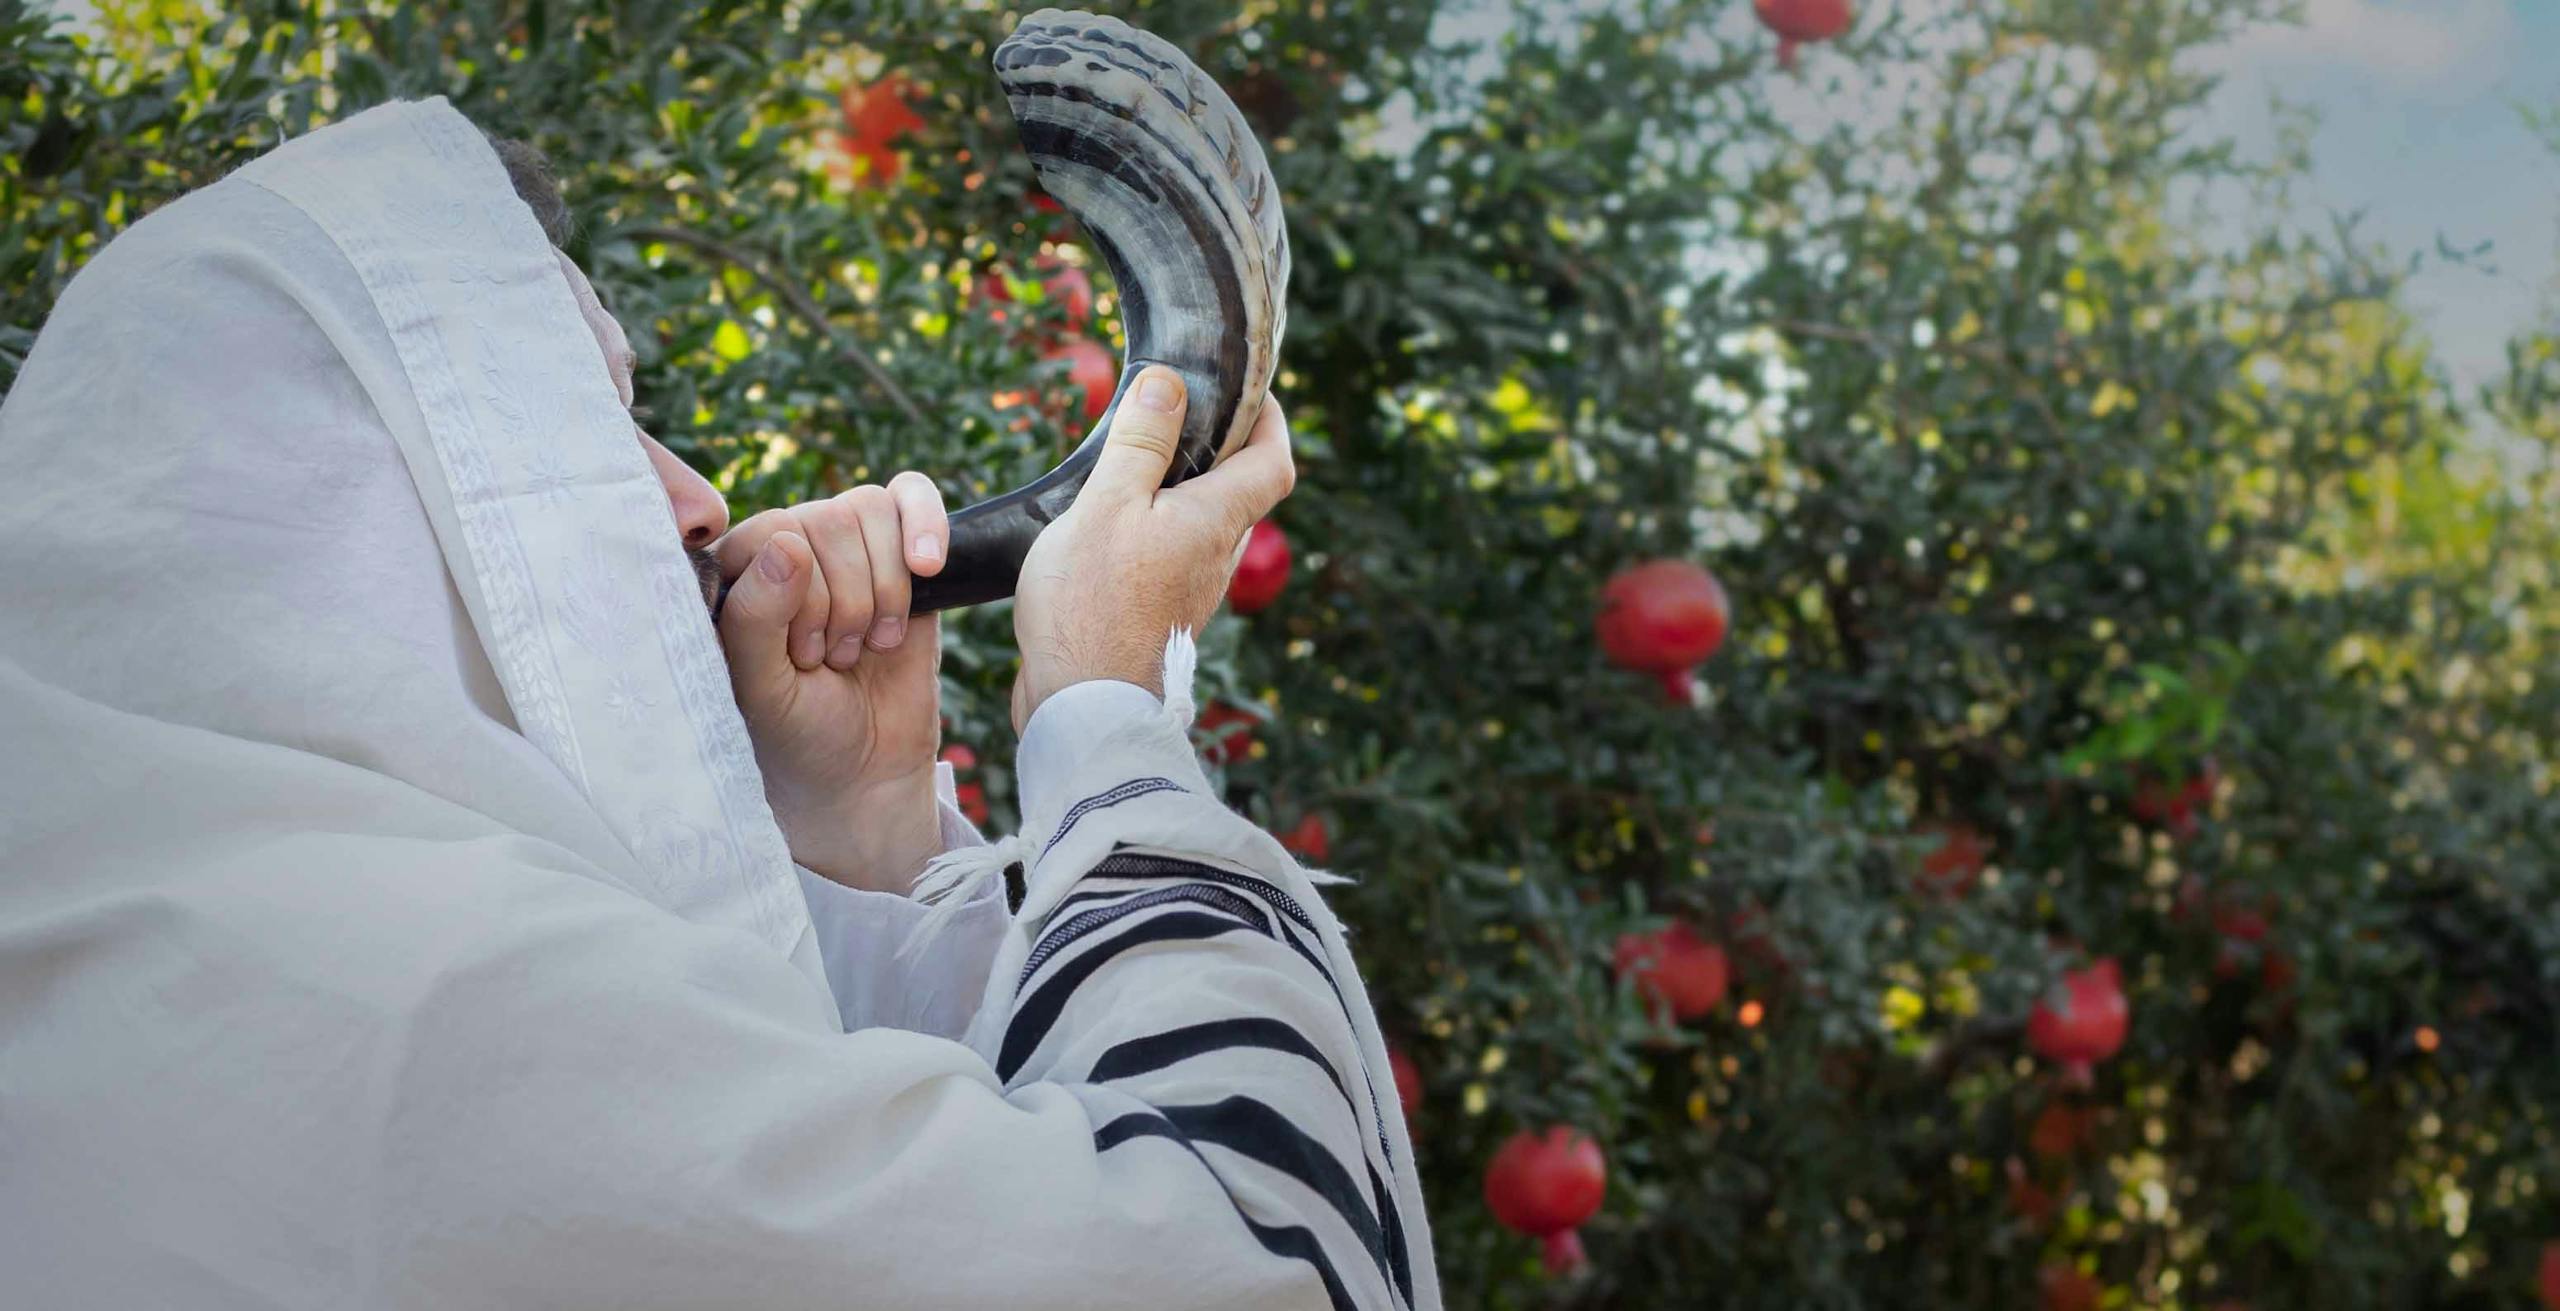 Rabbi blowing the shofar for Rosh Hashanah